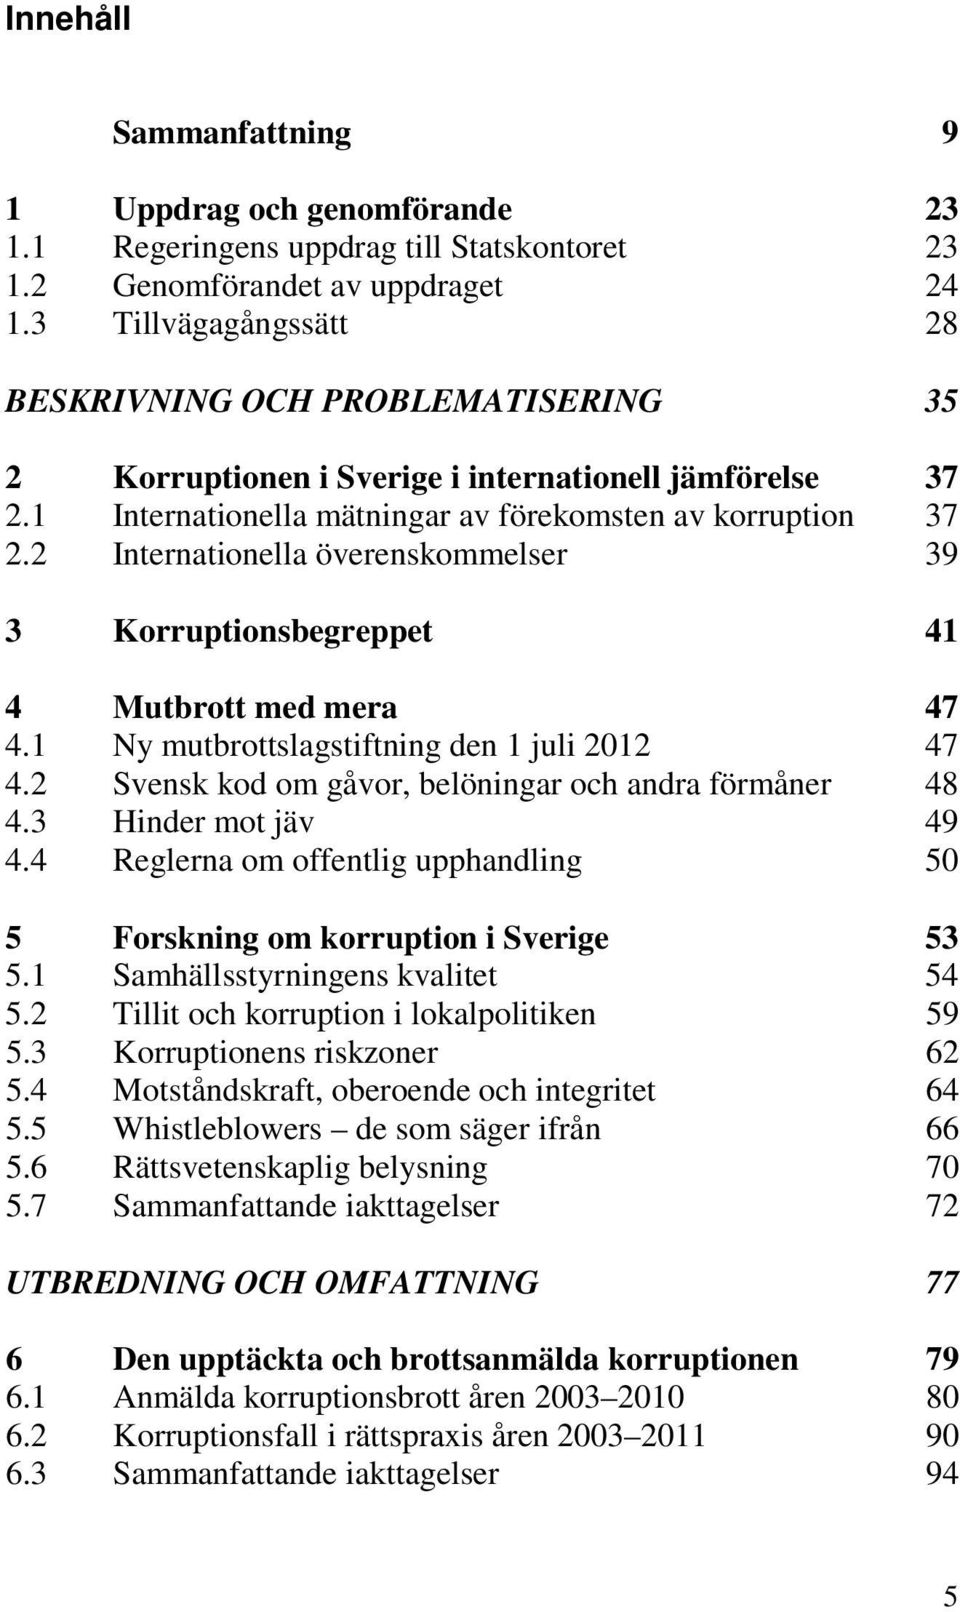 2 Internationella överenskommelser 39 3 Korruptionsbegreppet 41 4 Mutbrott med mera 47 4.1 Ny mutbrottslagstiftning den 1 juli 2012 47 4.2 Svensk kod om gåvor, belöningar och andra förmåner 48 4.